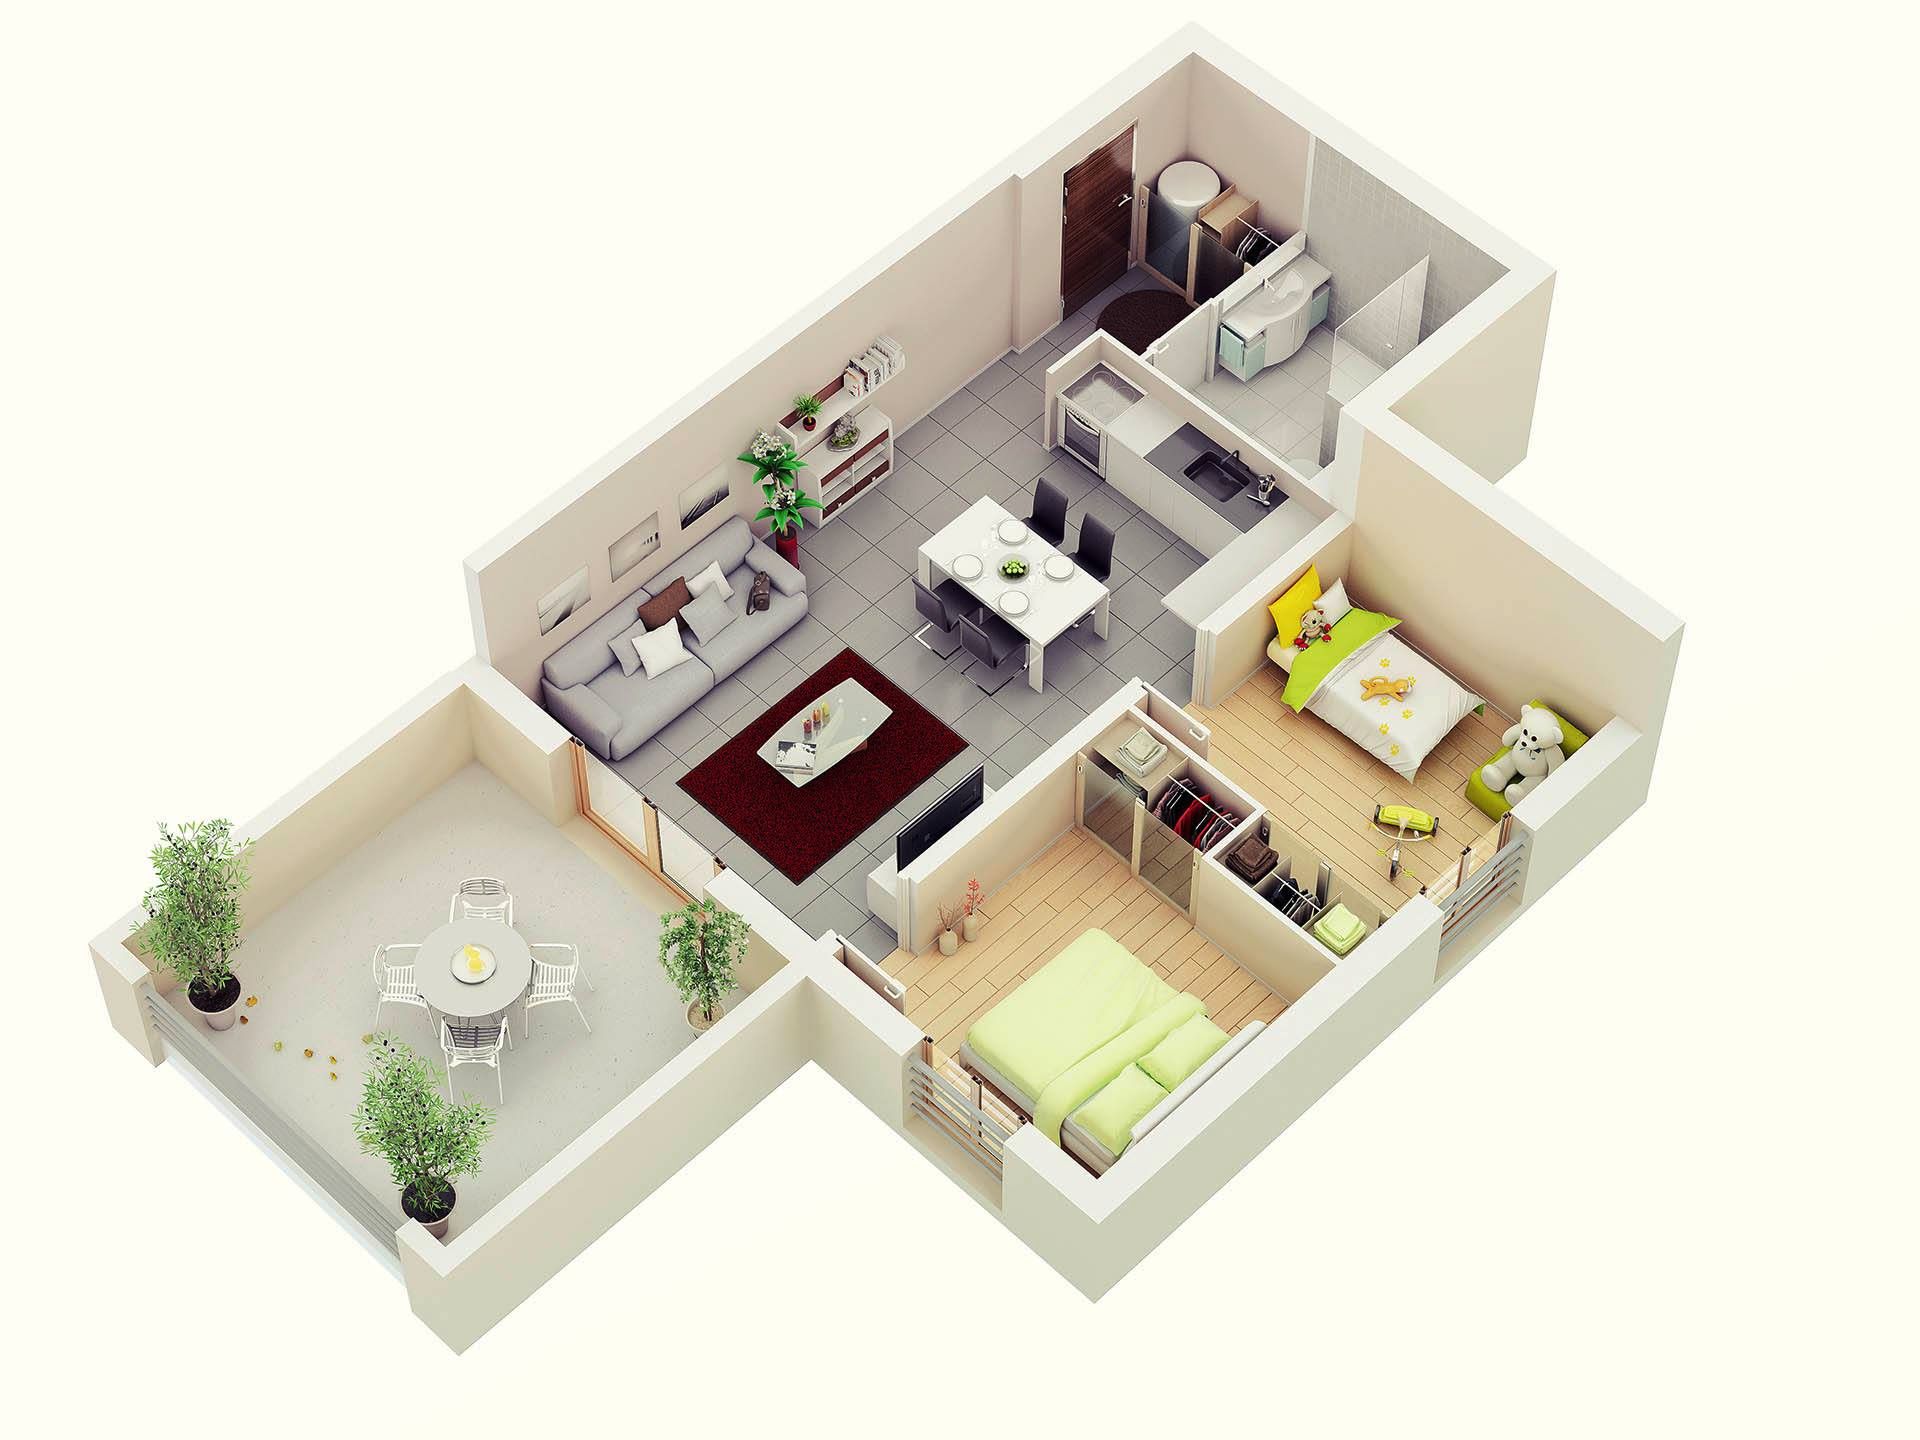 59 Gambar Desain Rumah Minimalis 3d Paling Diminati